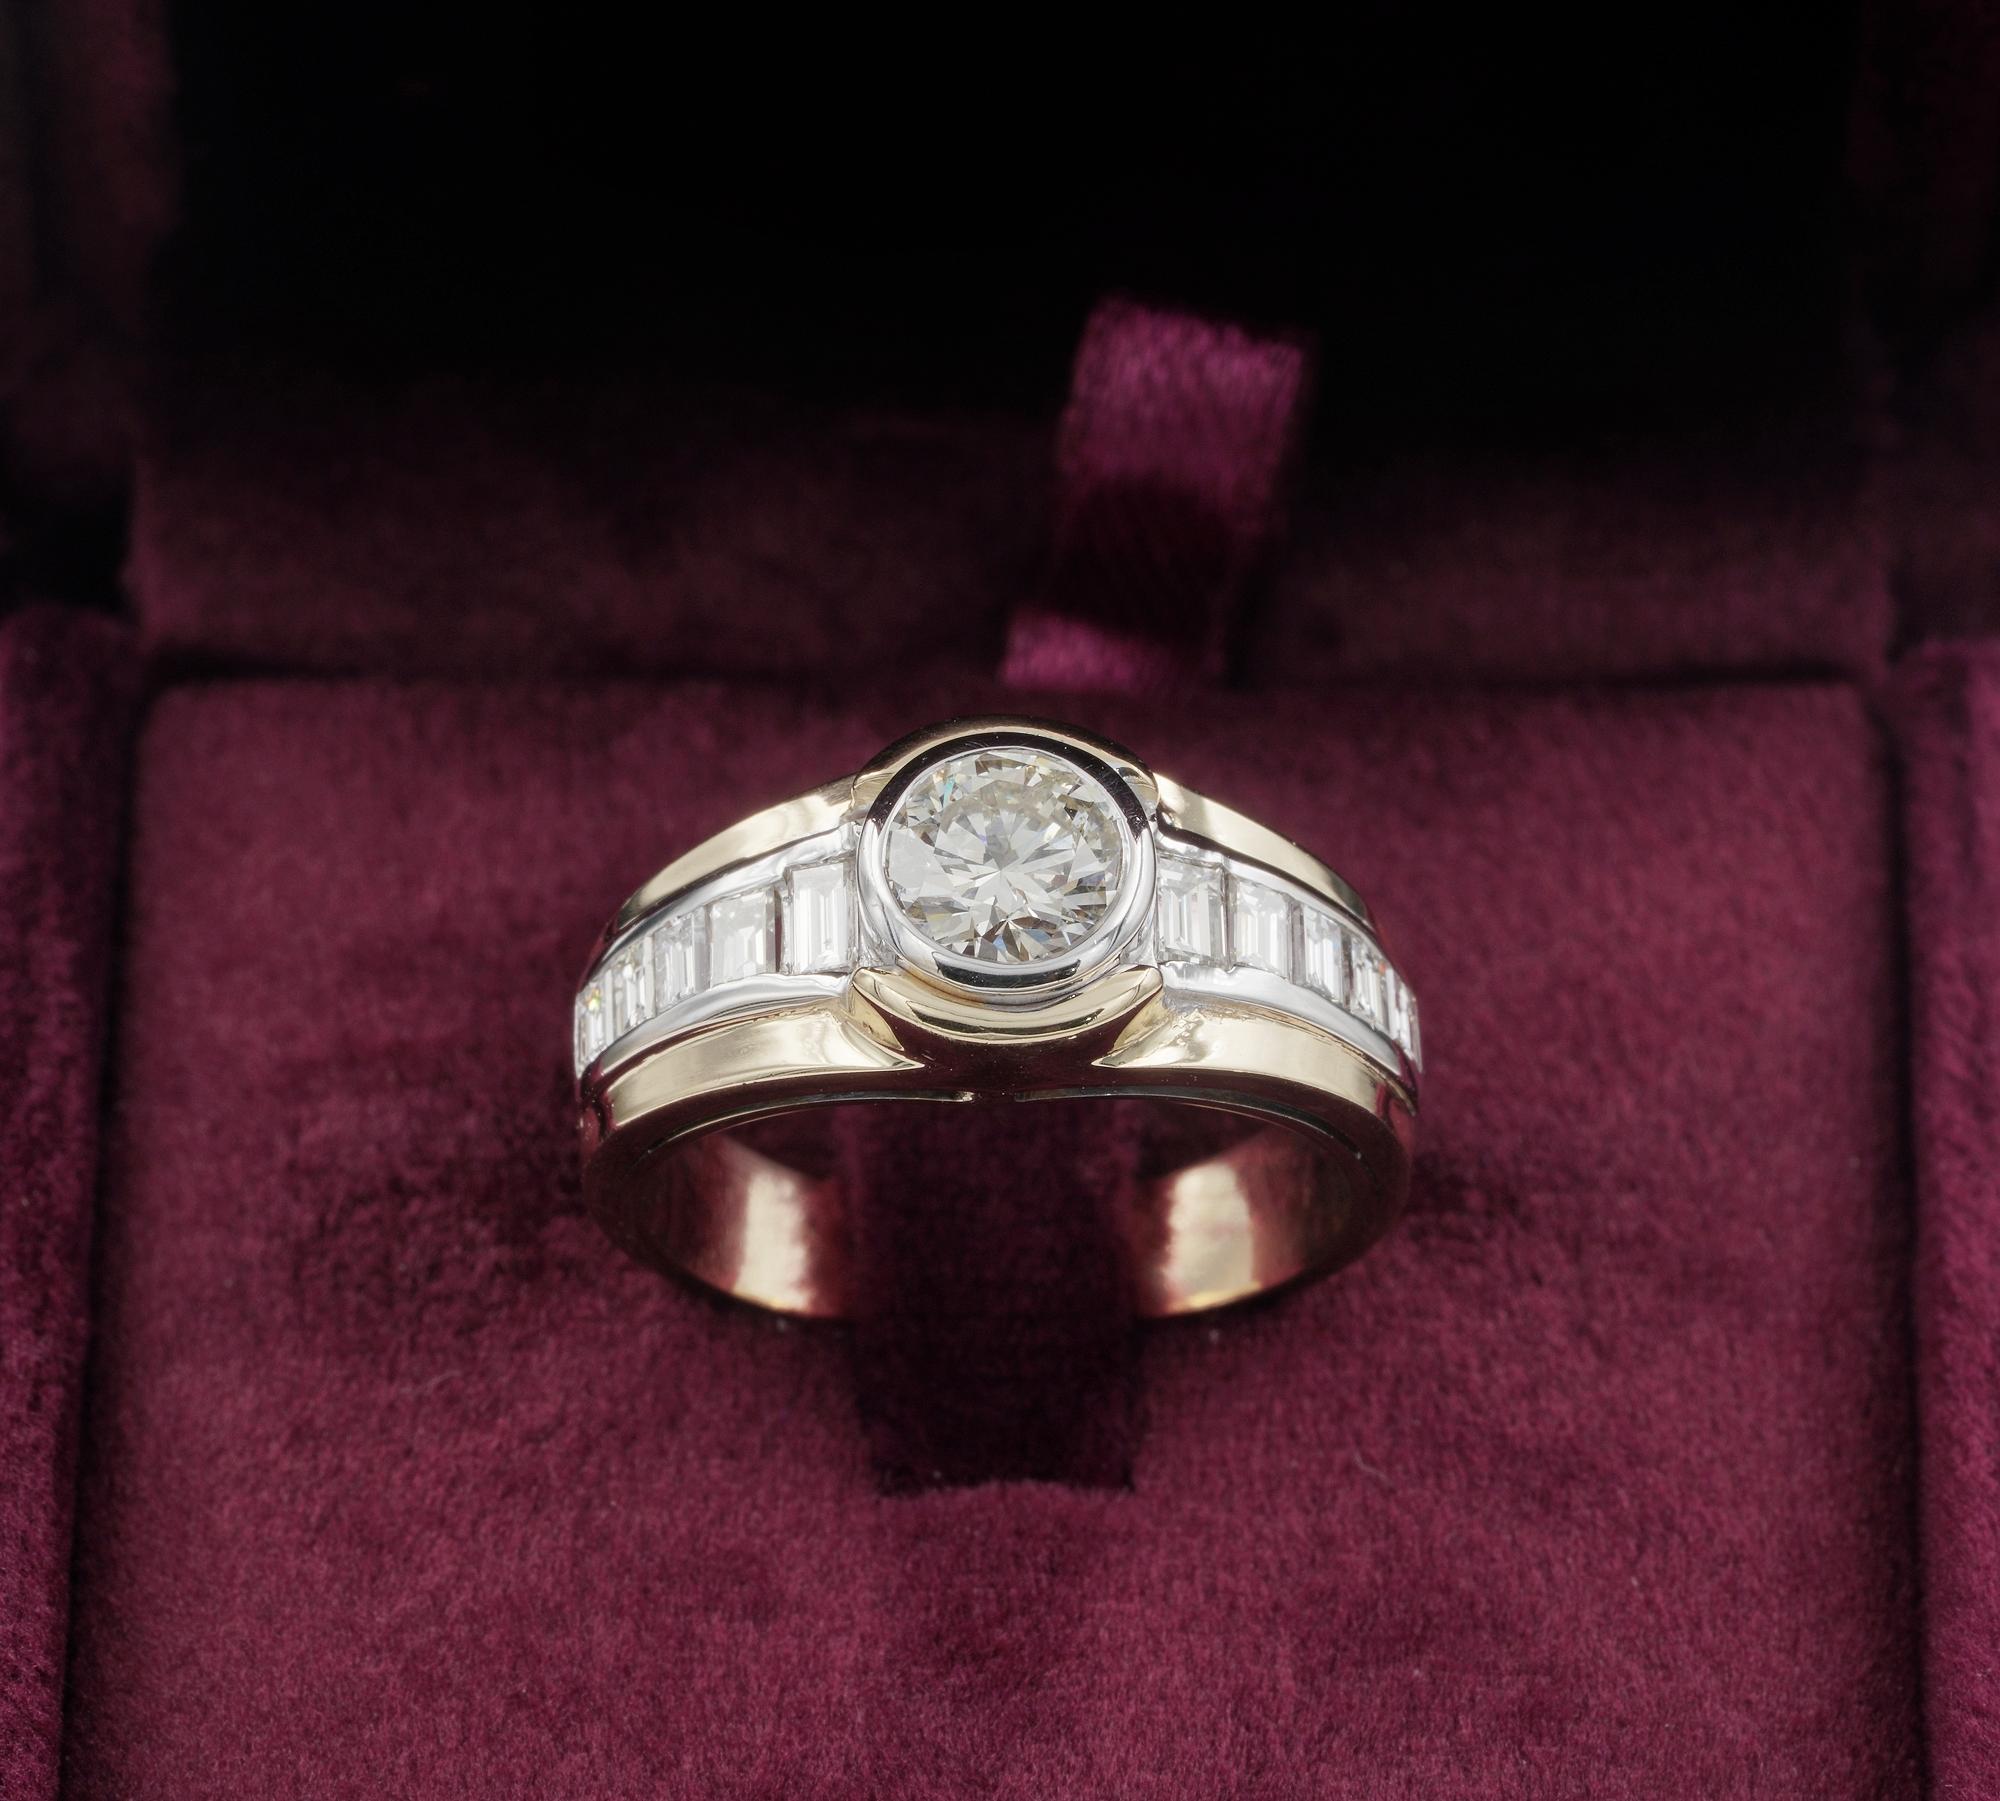 Cette bague en diamant de succession date de 1970 environ.
Superbement réalisé à la main en version bicolore 18 KT massif
Le bracelet est élégamment taillé avec un diamant principal au centre, serti entre deux canaux effilés qui brillent de mille